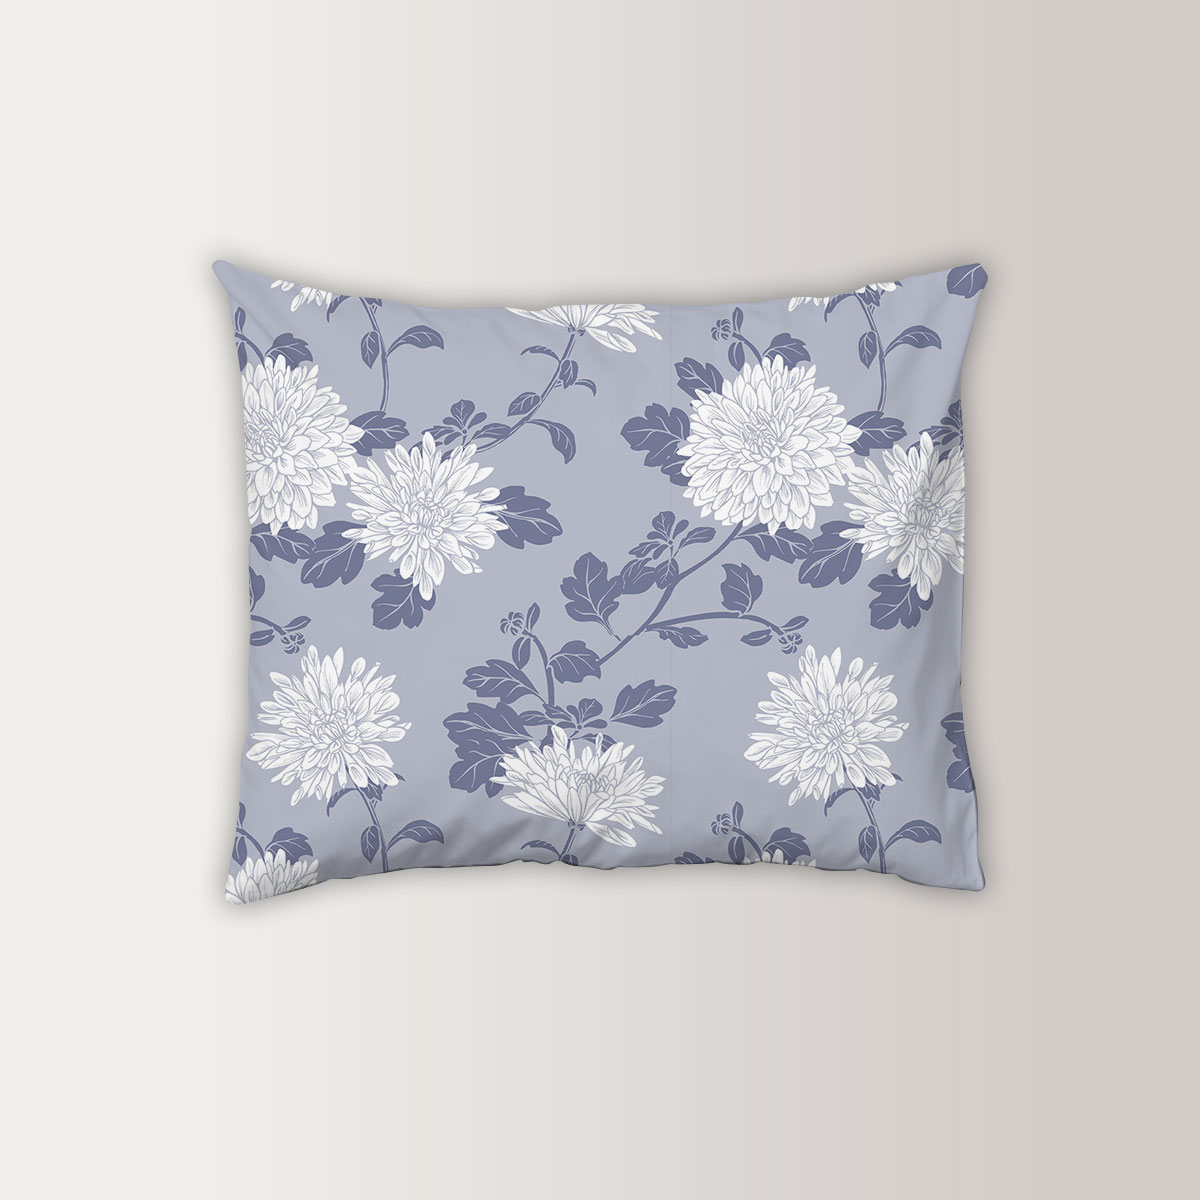 White Chrysanthemum Pillow Case